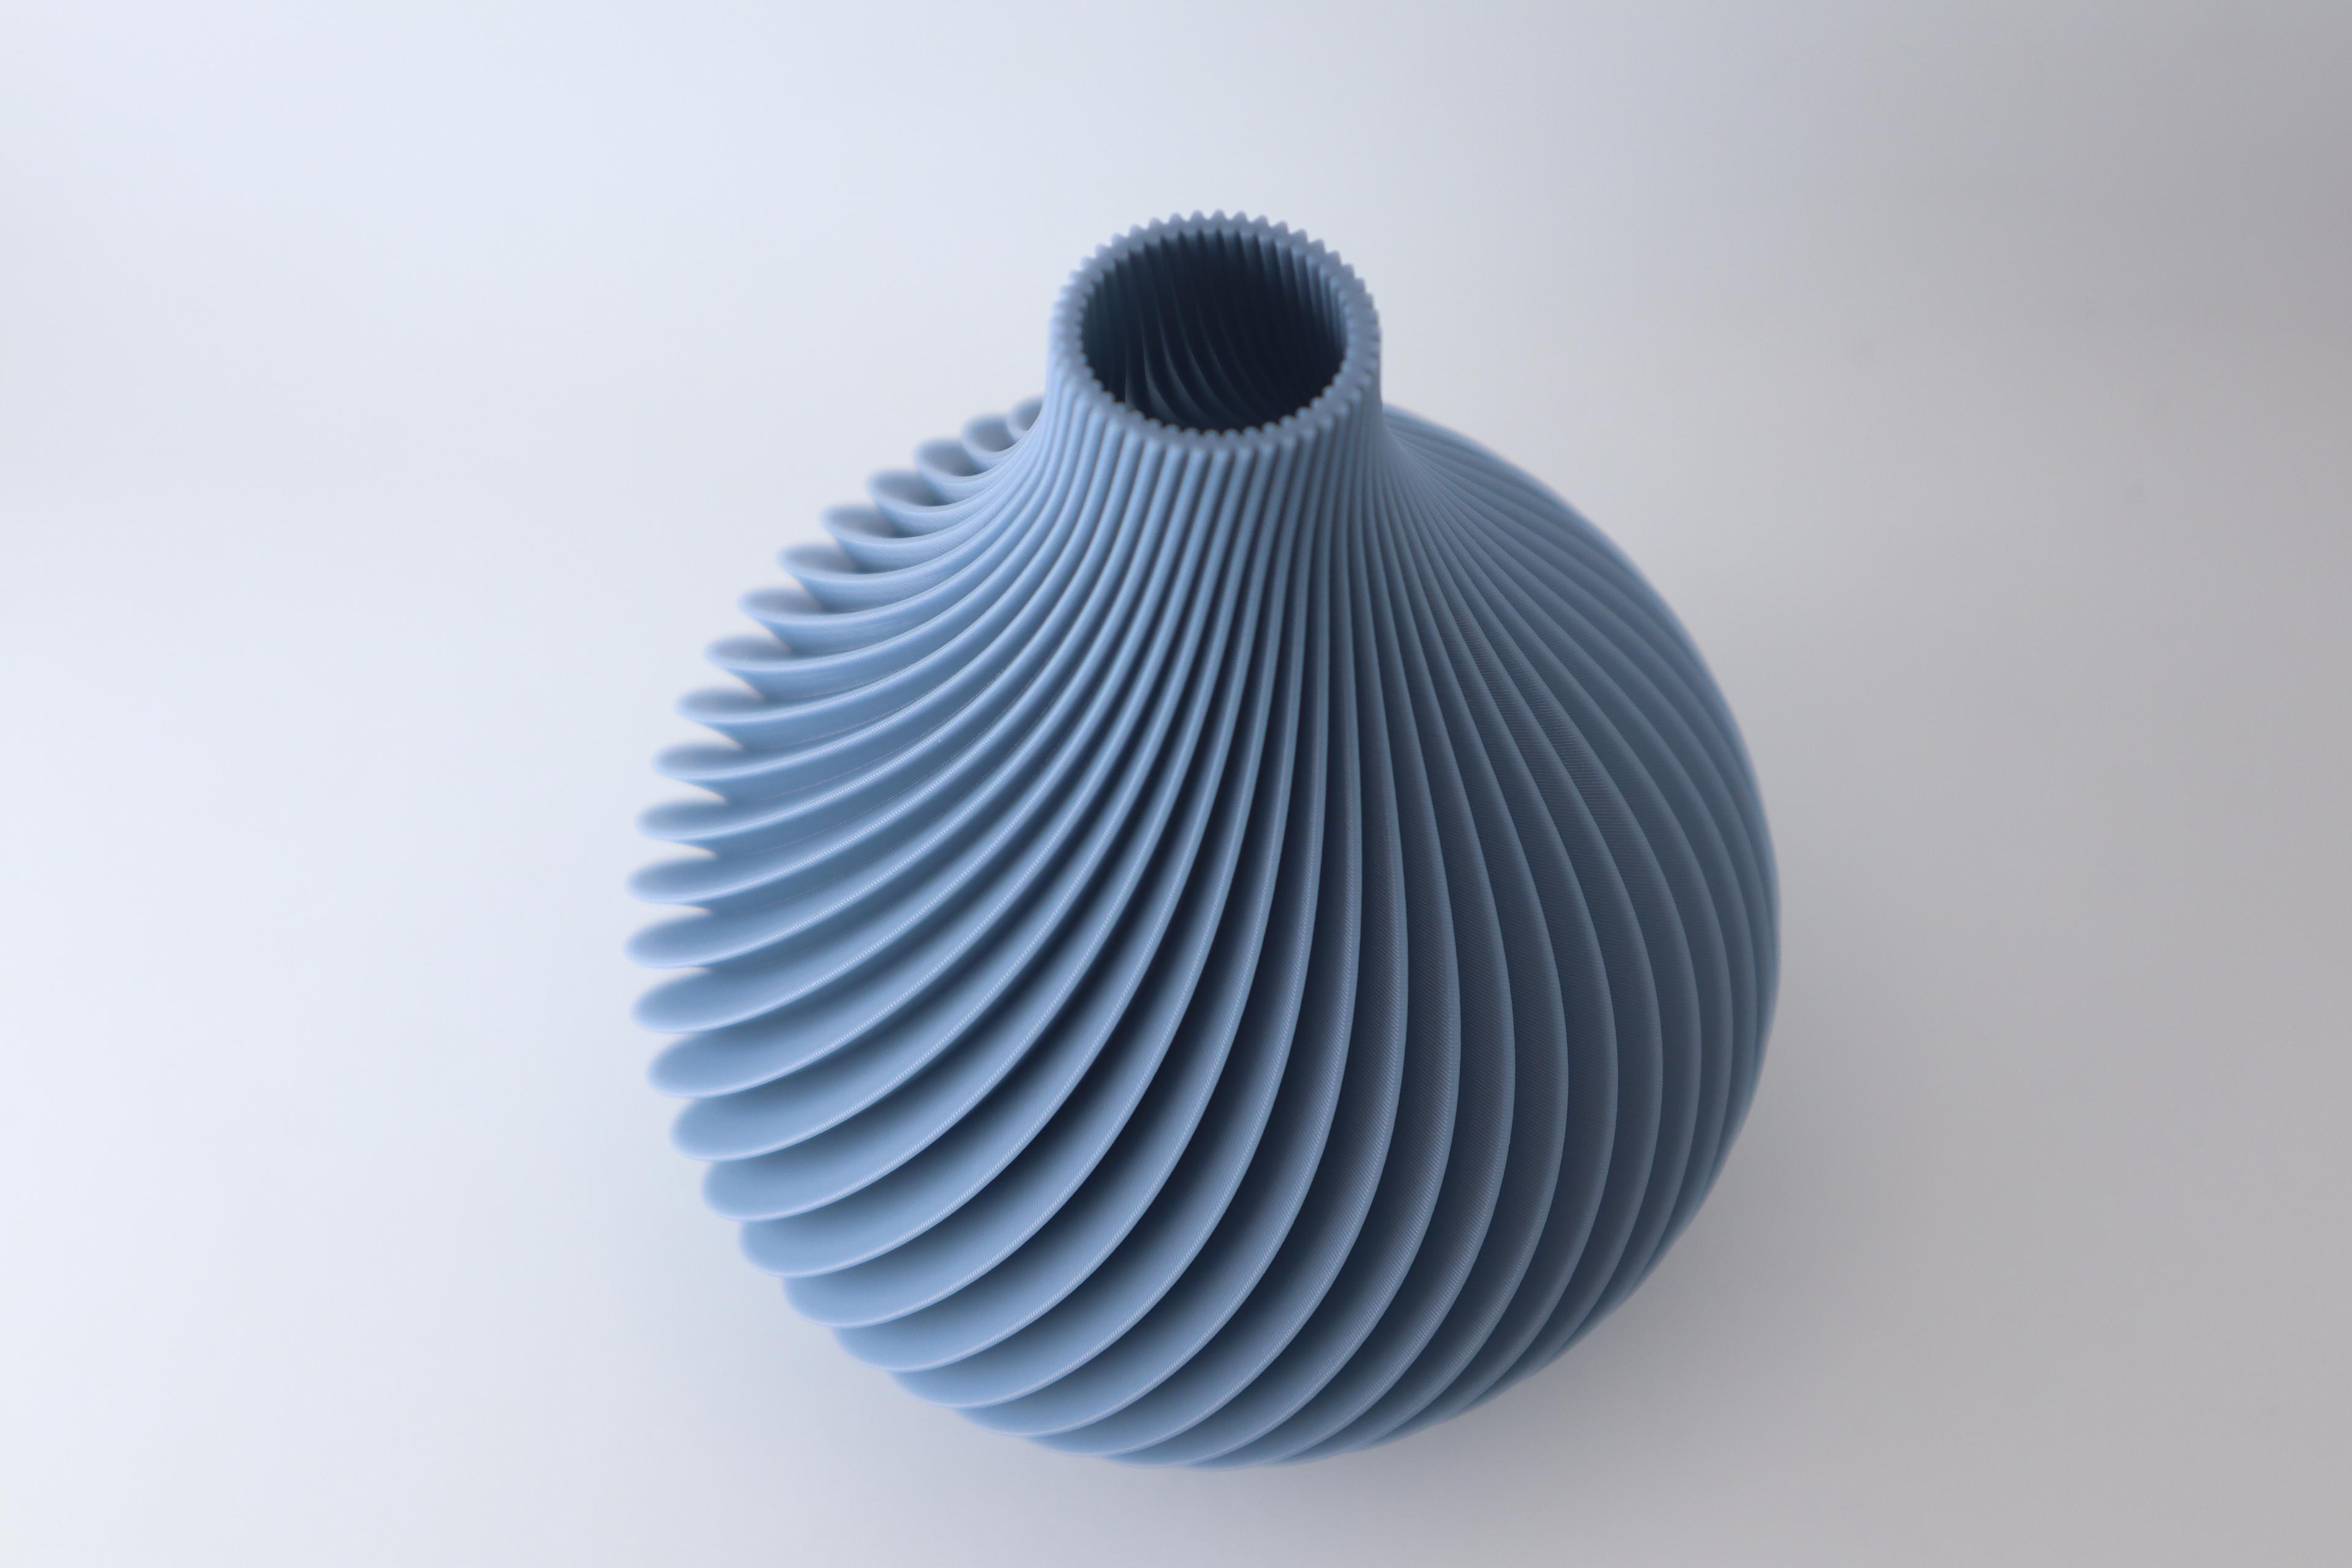 The Scand Vase 3d model